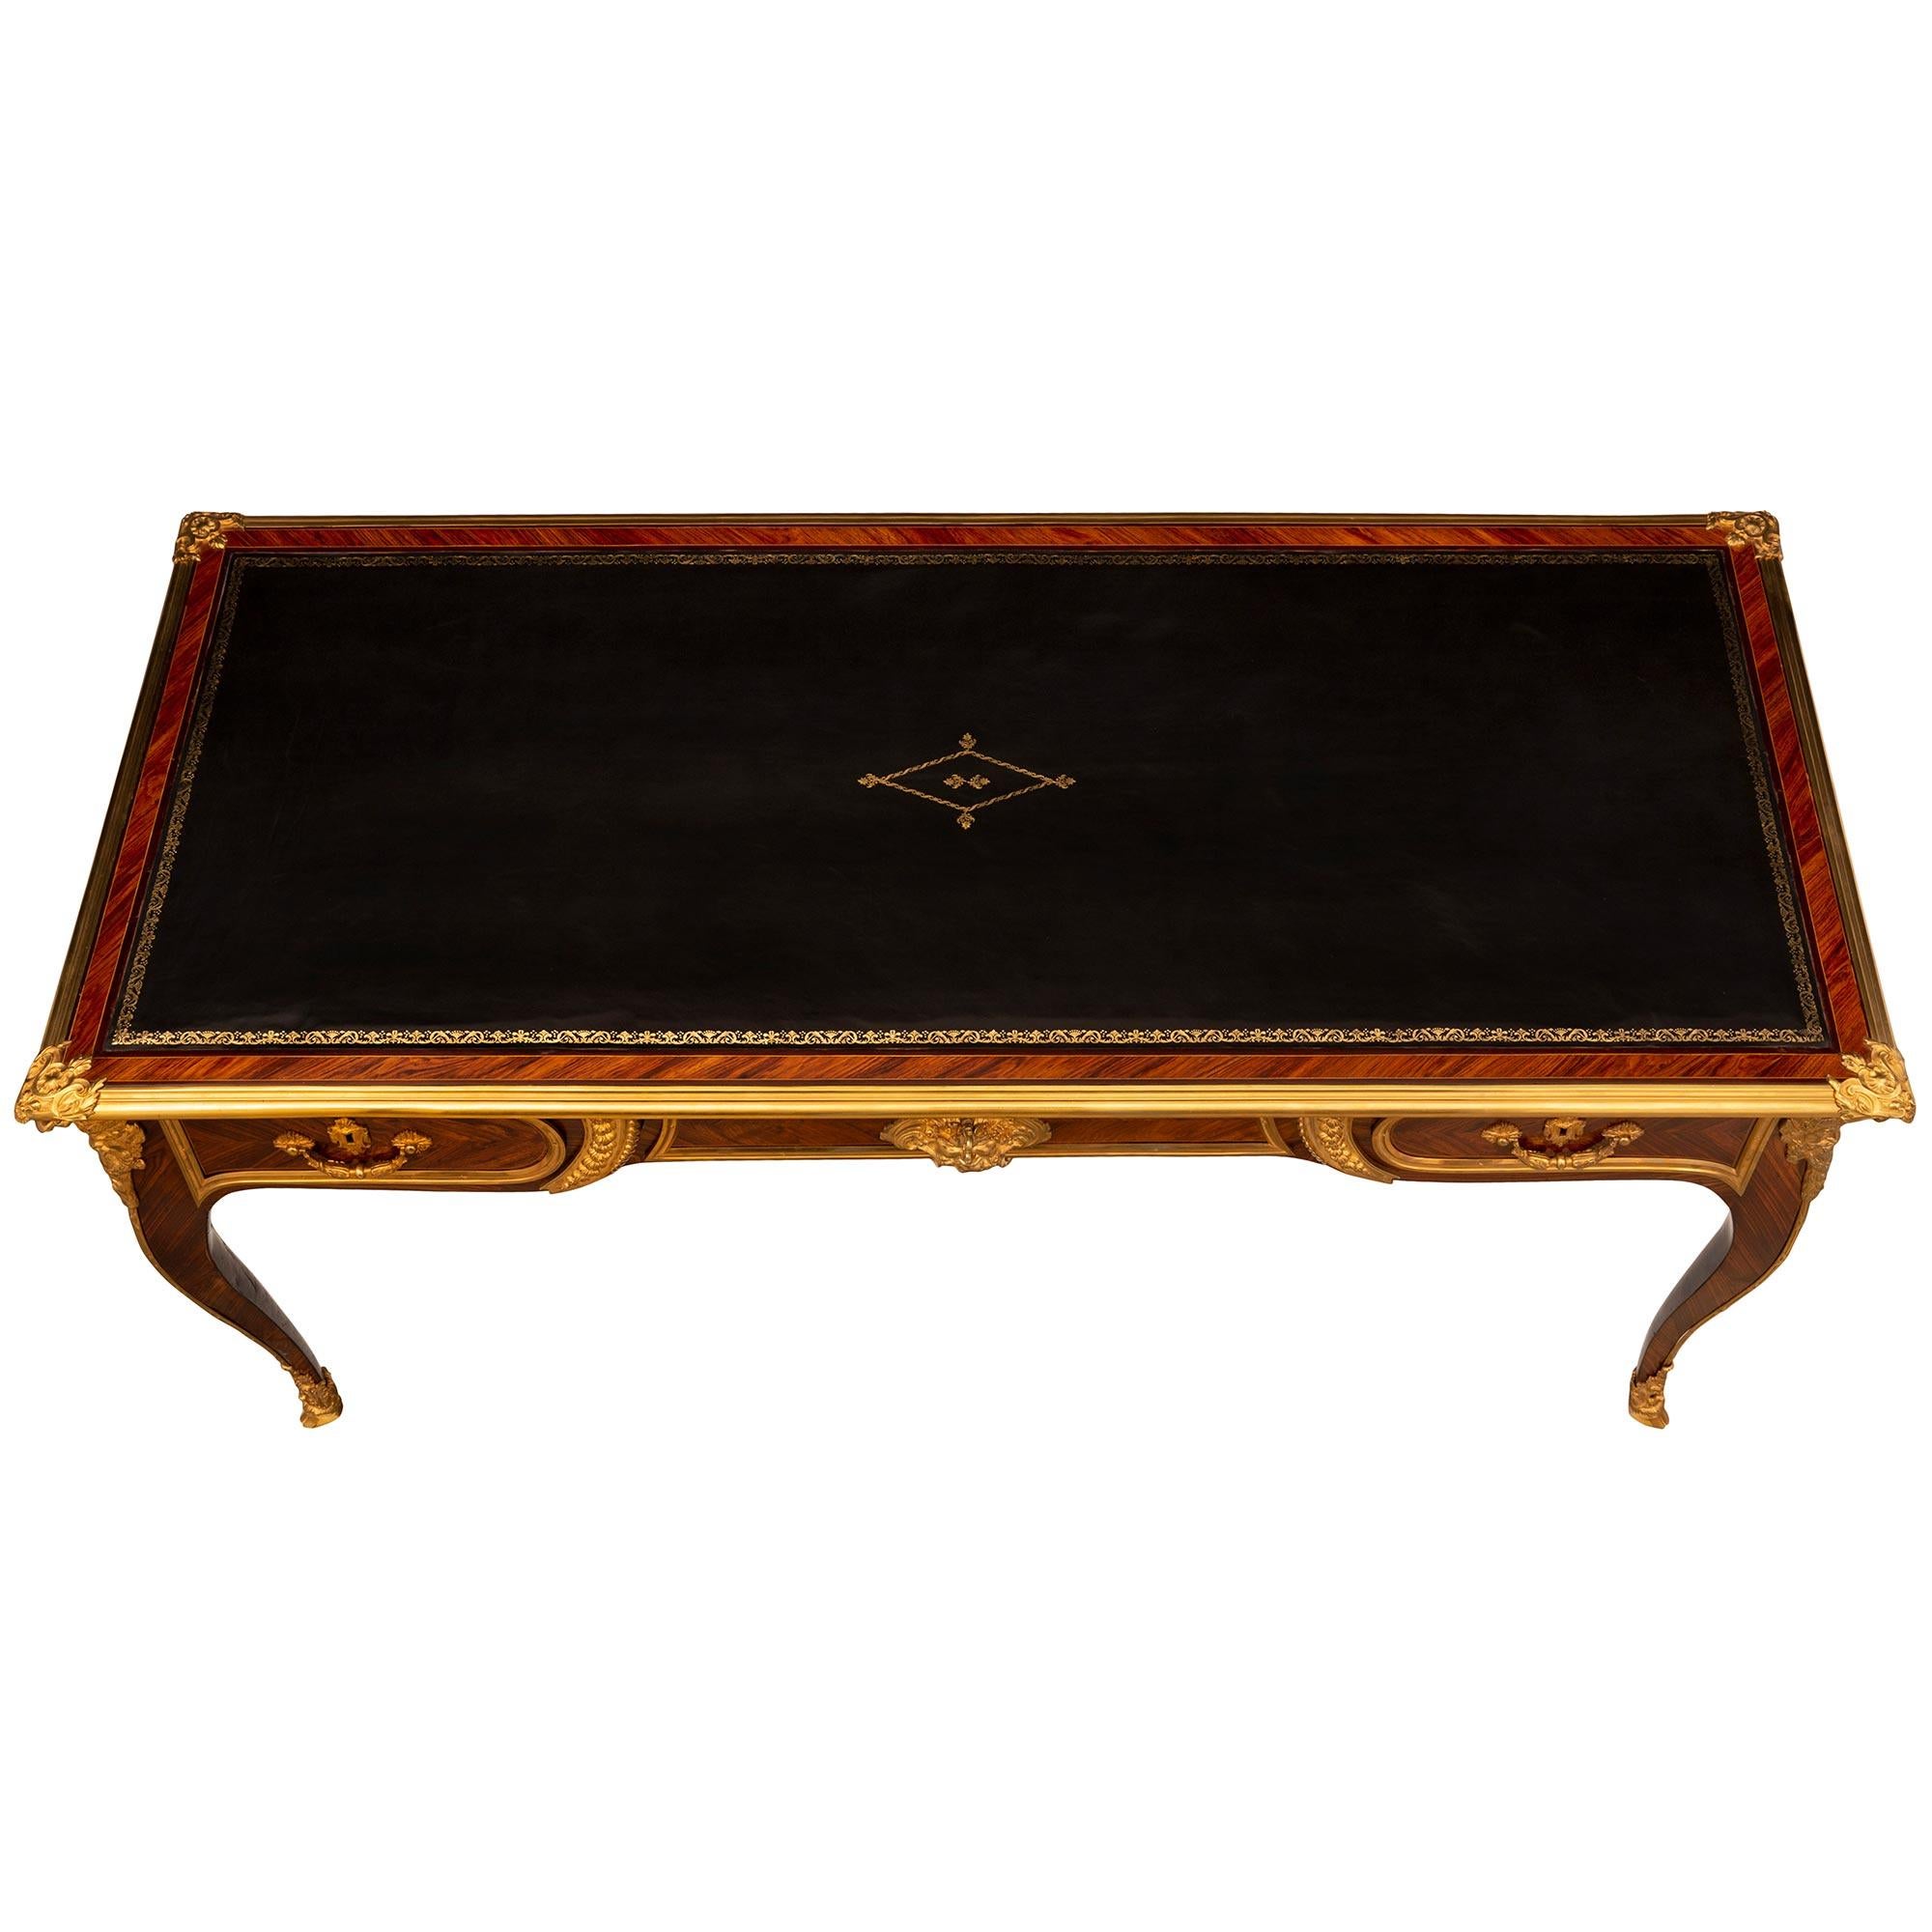 Ein prächtiger und sehr hochwertiger französischer Bureau Plat-Schreibtisch aus Tulpenholz, Veilchenholz und Goldbronze aus der Zeit Ludwigs XV. aus dem 18. Jahrhundert. Der Schreibtisch steht auf einem eleganten Cabriole-Bein mit exquisiten